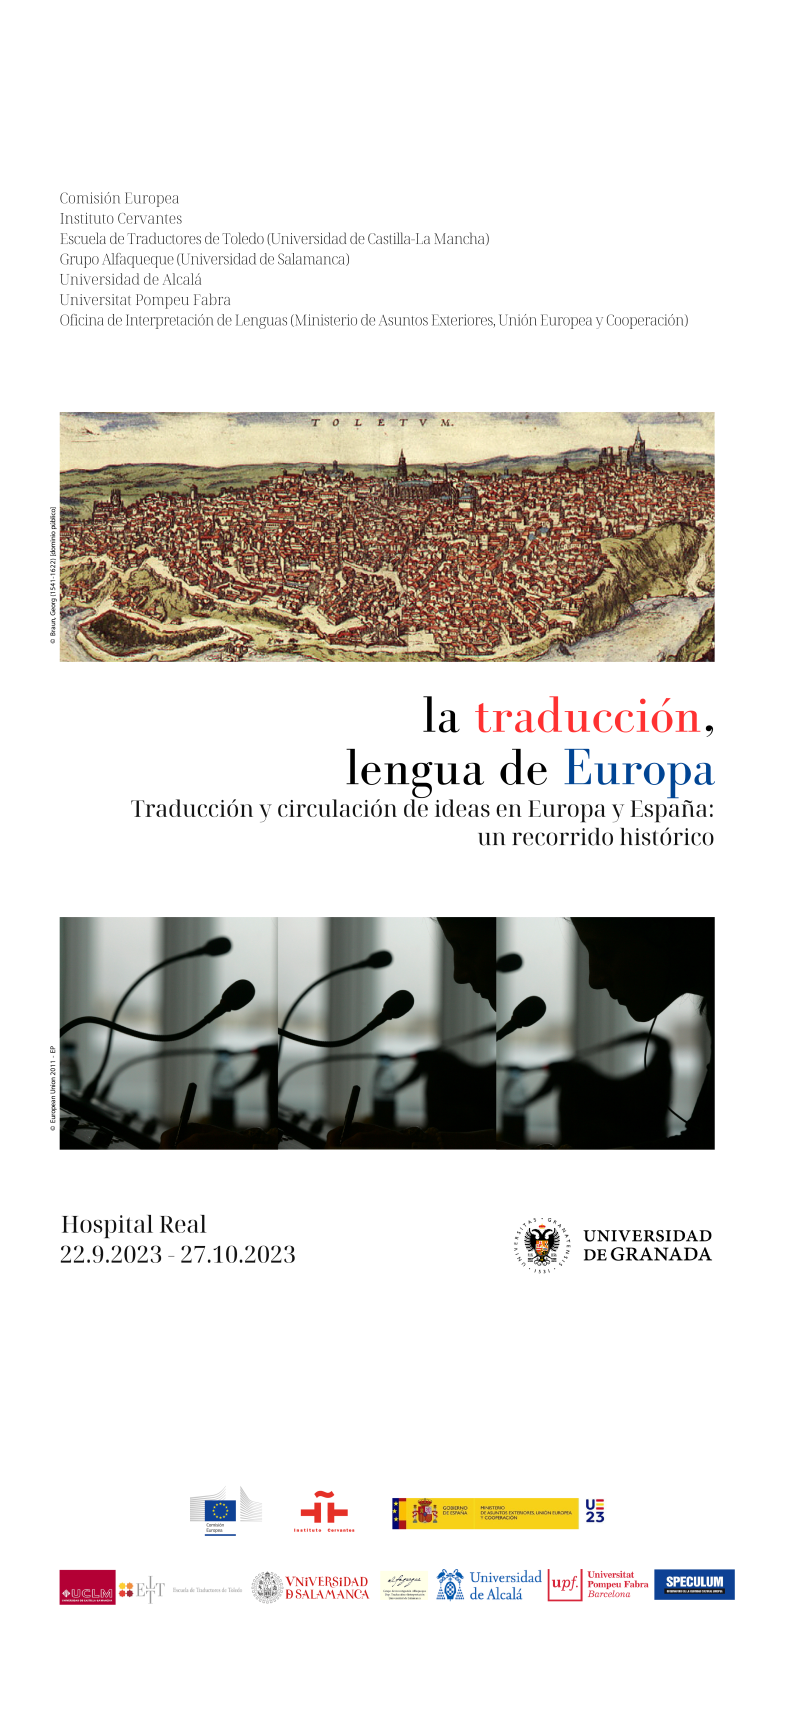 Cartel anunciador de la exposición en el que aparece un dibujo de una ciudad medieval